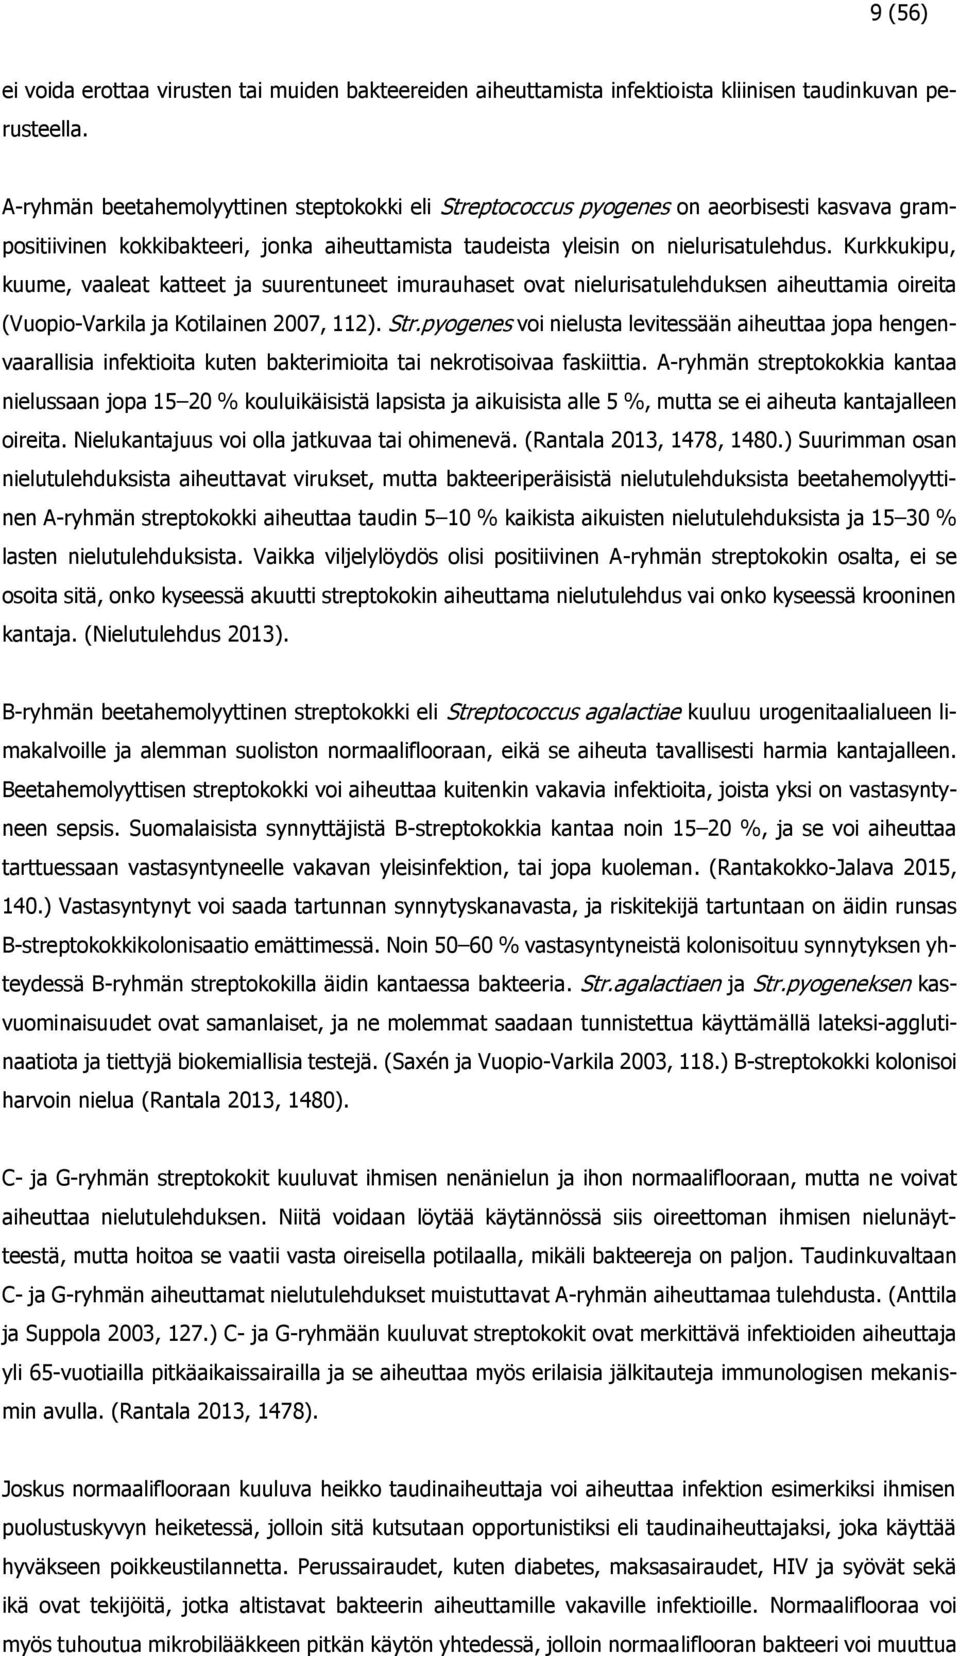 Kurkkukipu, kuume, vaaleat katteet ja suurentuneet imurauhaset ovat nielurisatulehduksen aiheuttamia oireita (Vuopio-Varkila ja Kotilainen 2007, 112). Str.